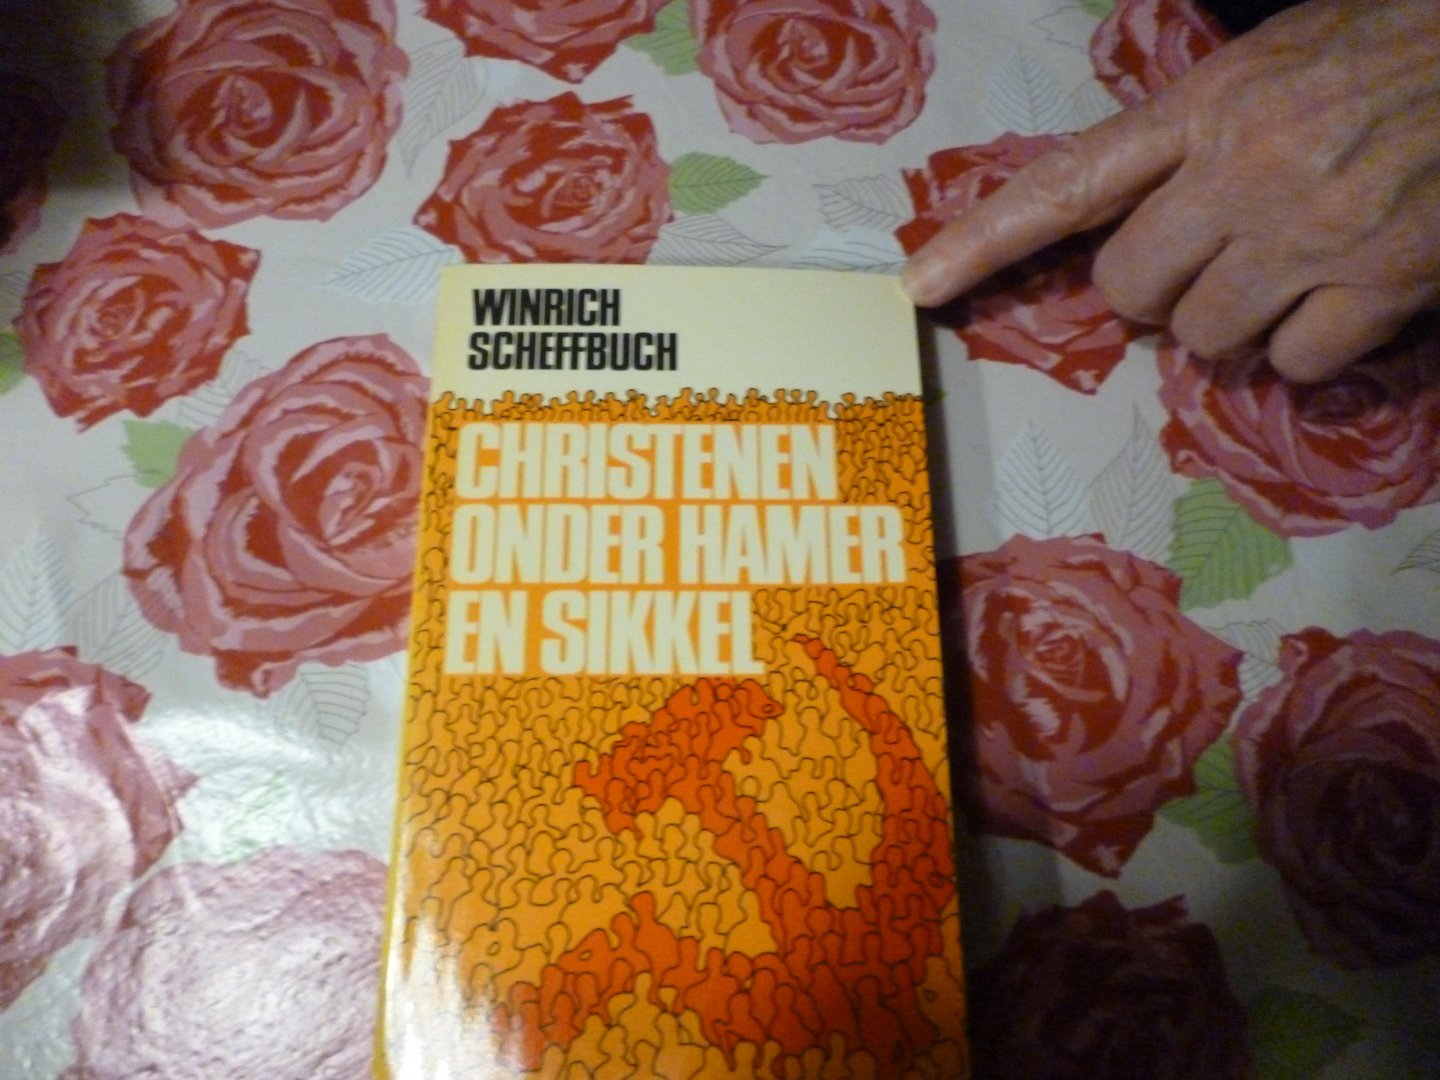 Scheffbuch Winrich - Christenen onder hamer en sikkel